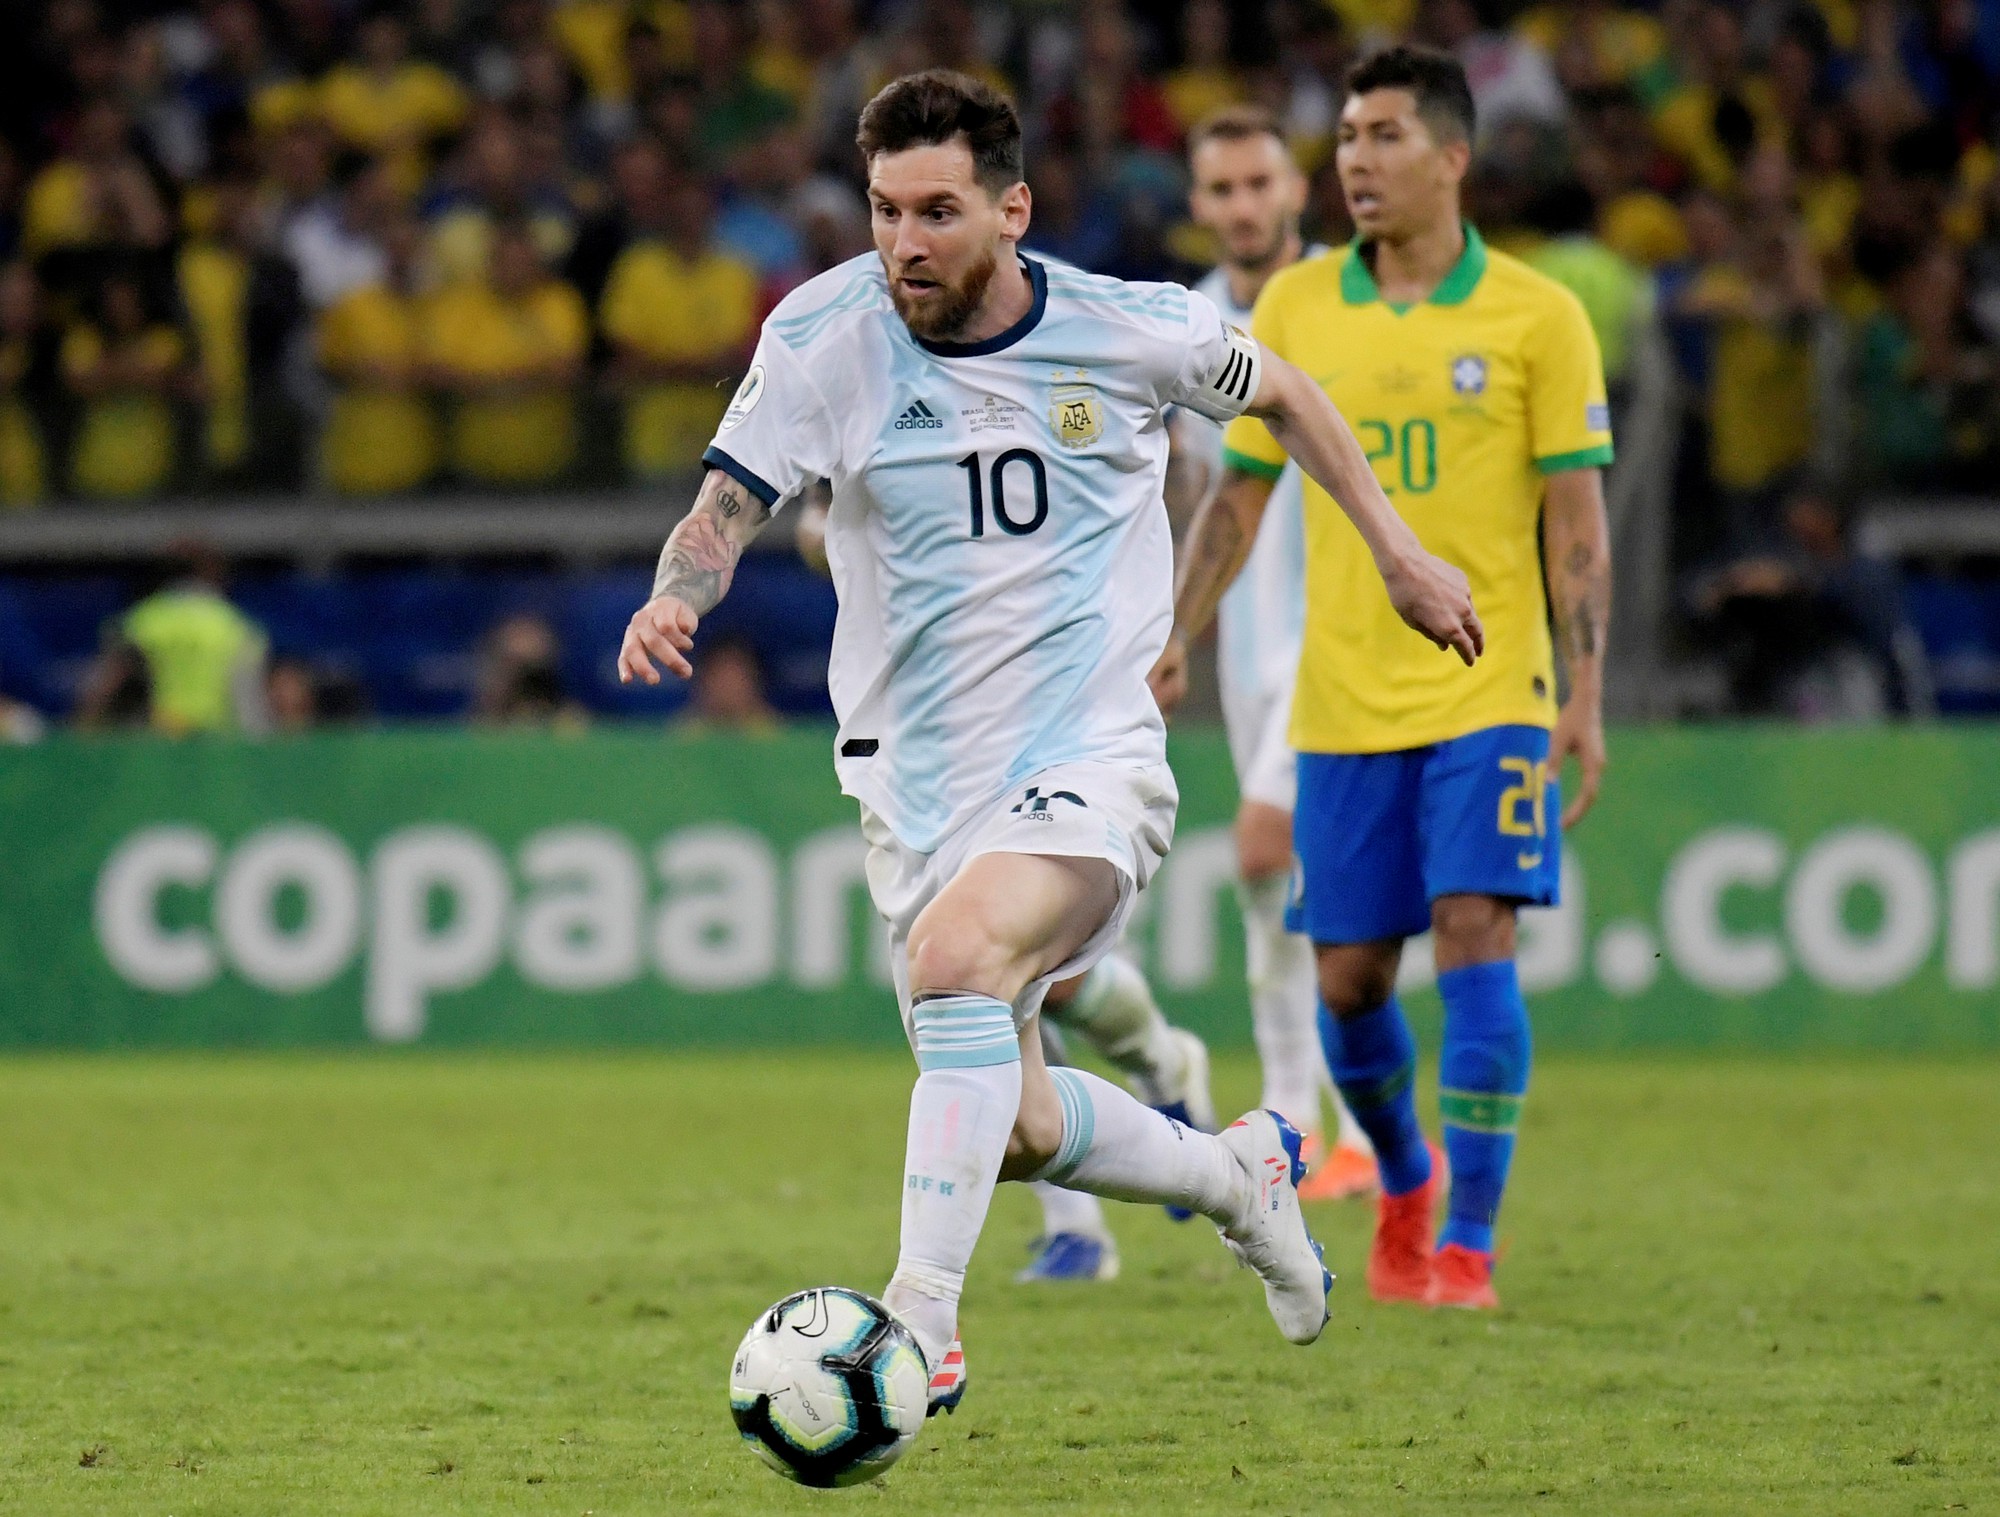 Trong trận đấu mới đây giữa Messi và Brazil, đã xuất hiện một trọng tài không công bằng và miệt thị, khiến Messi và đồng đội phải chịu nhiều tổn thất. Một số người còn gọi ông ta là \